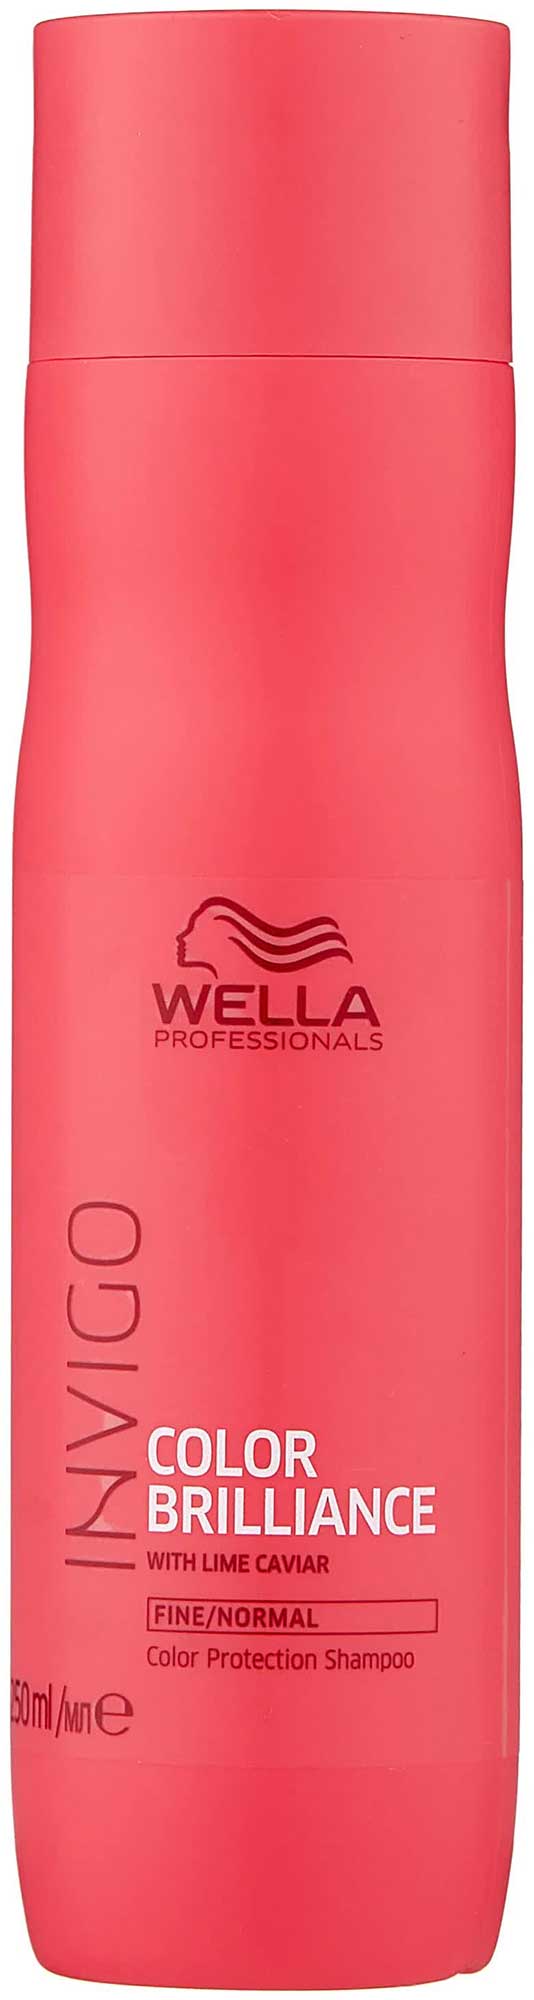 Шампунь WELLA PROFESSIONAL для защиты цвета окрашенных нормальных и тонких волос 250